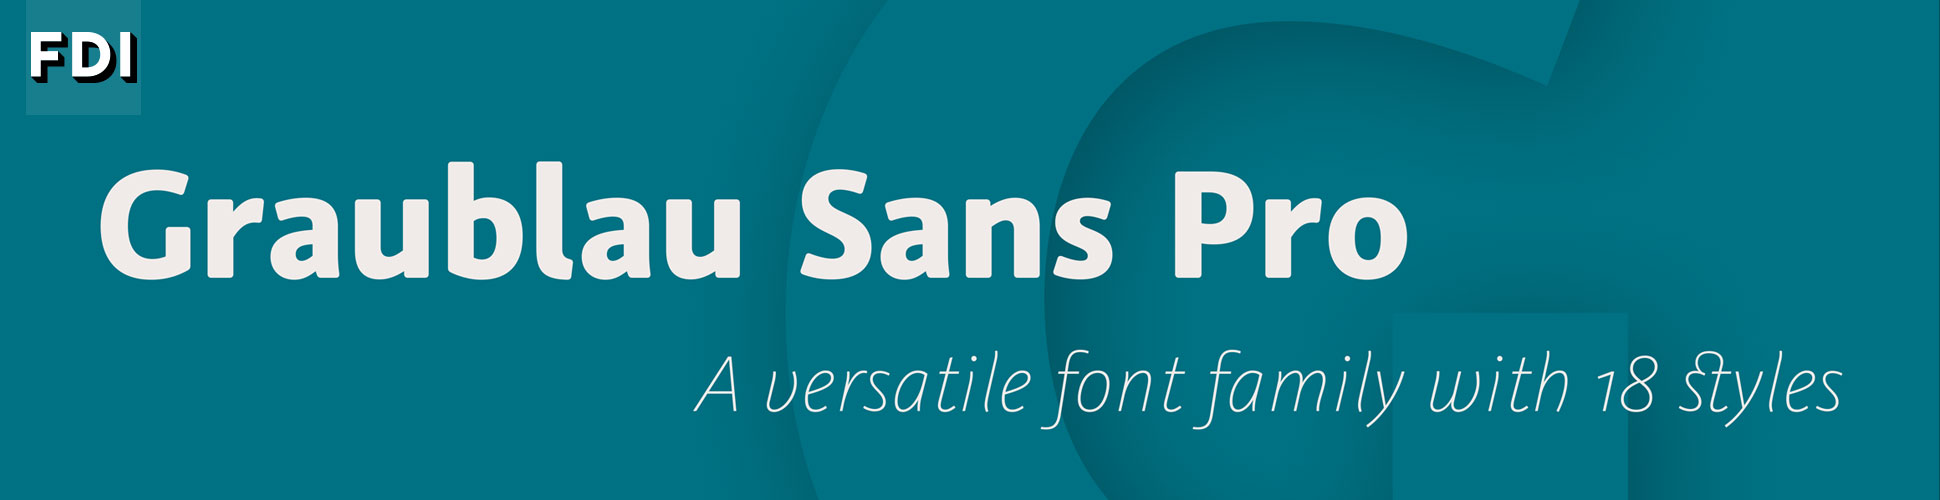 Graublau Sans Pro: eine vielseitige Schriftfamilie in 18 Schnitten